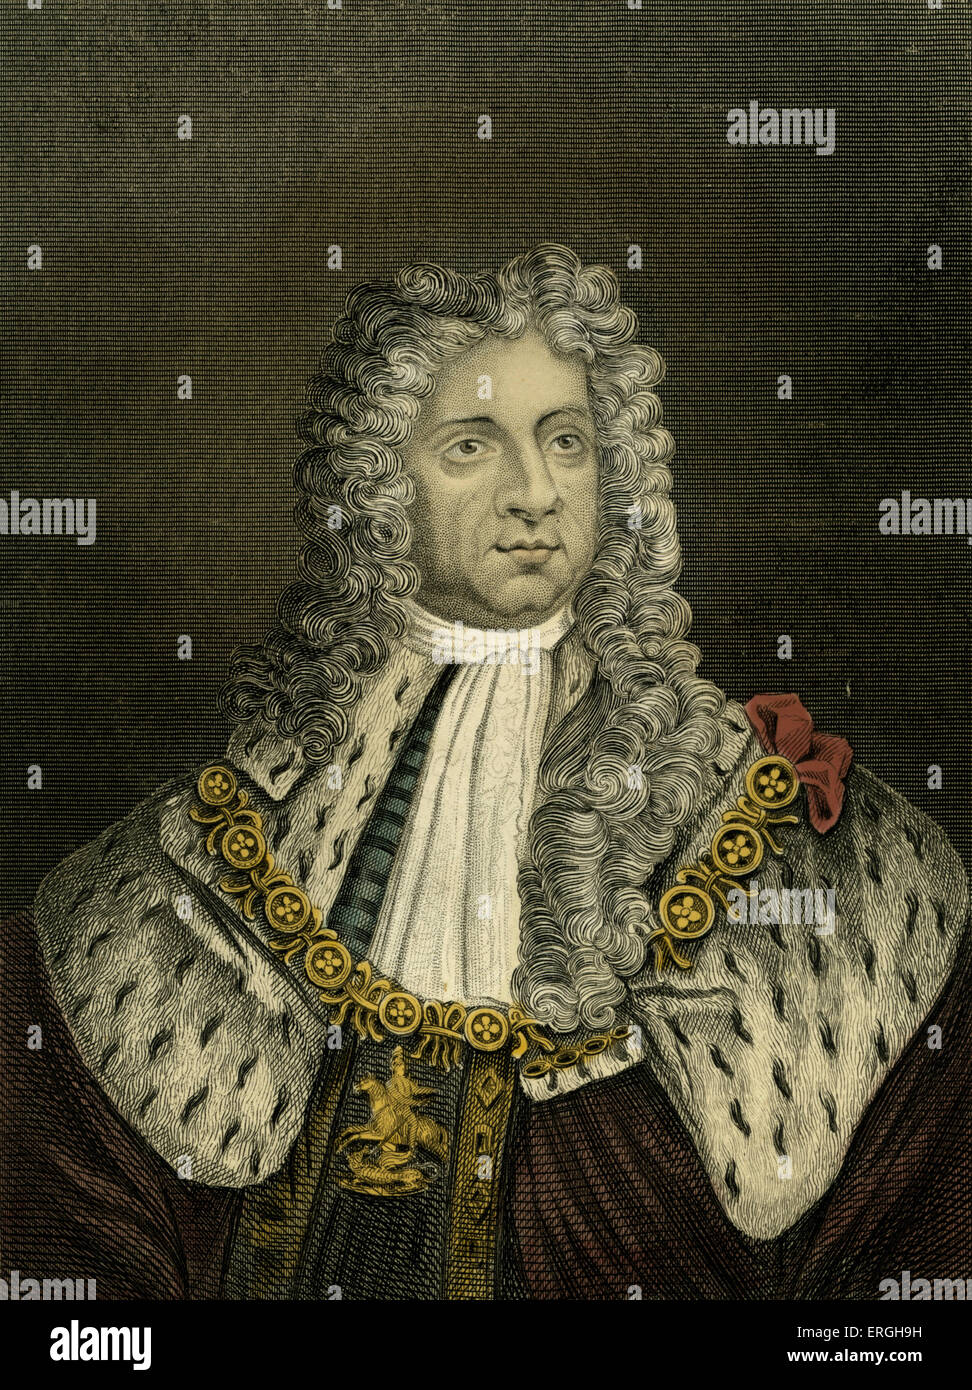 King George I (1660 - 1727) fue Rey de Gran Bretaña e Irlanda desde 1714 hasta su muerte. Foto de stock